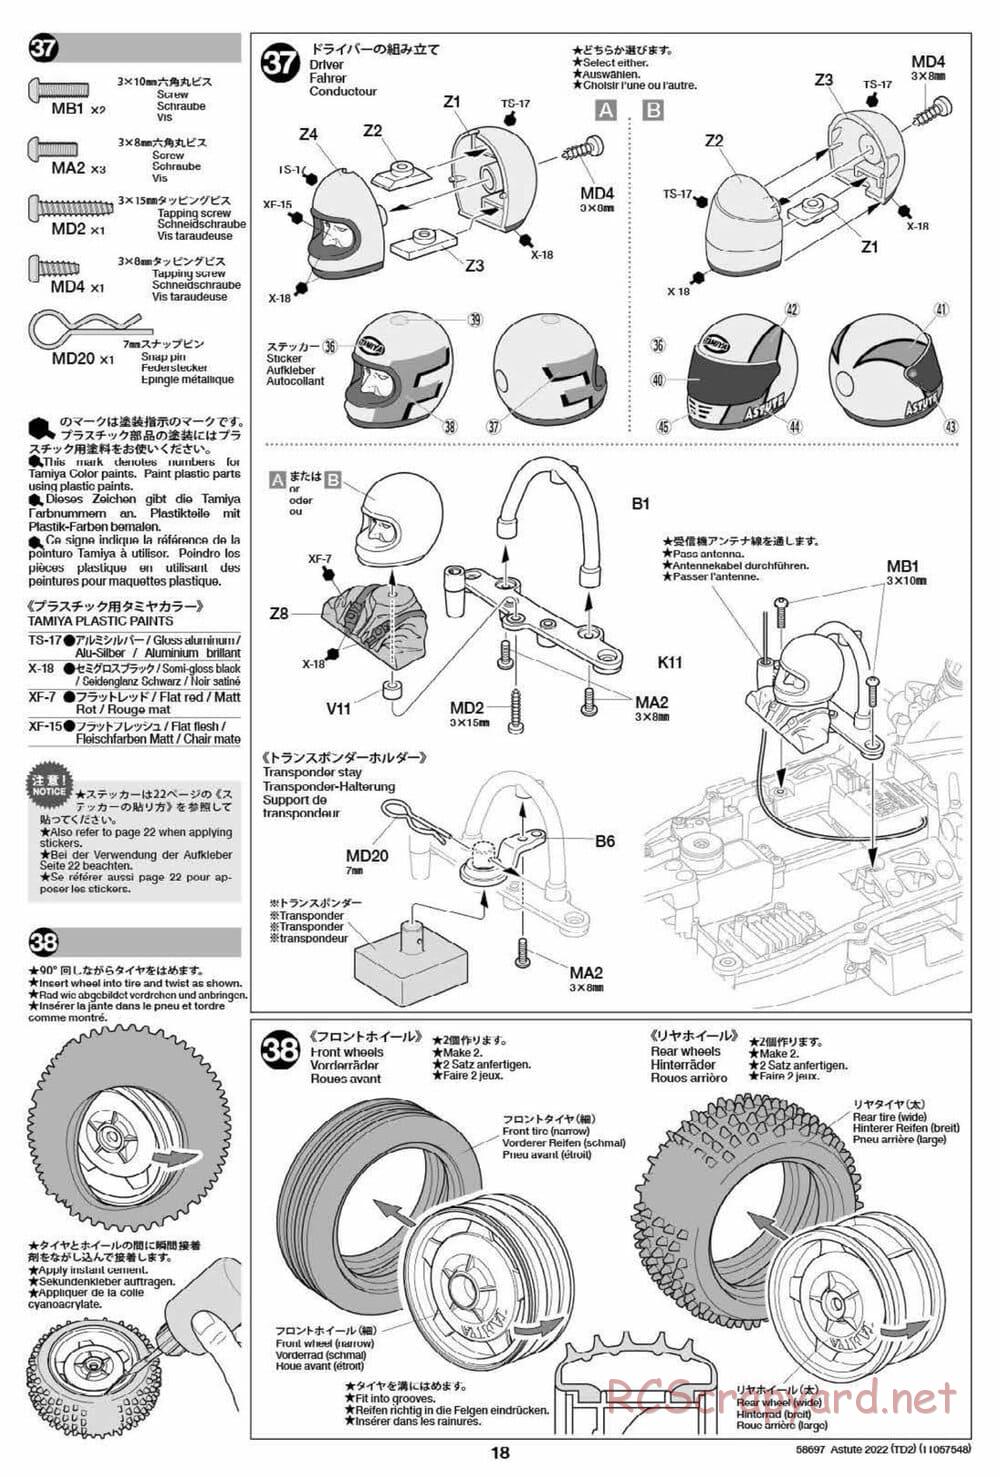 Tamiya - Astute 2022 - TD2 Chassis - Manual - Page 18